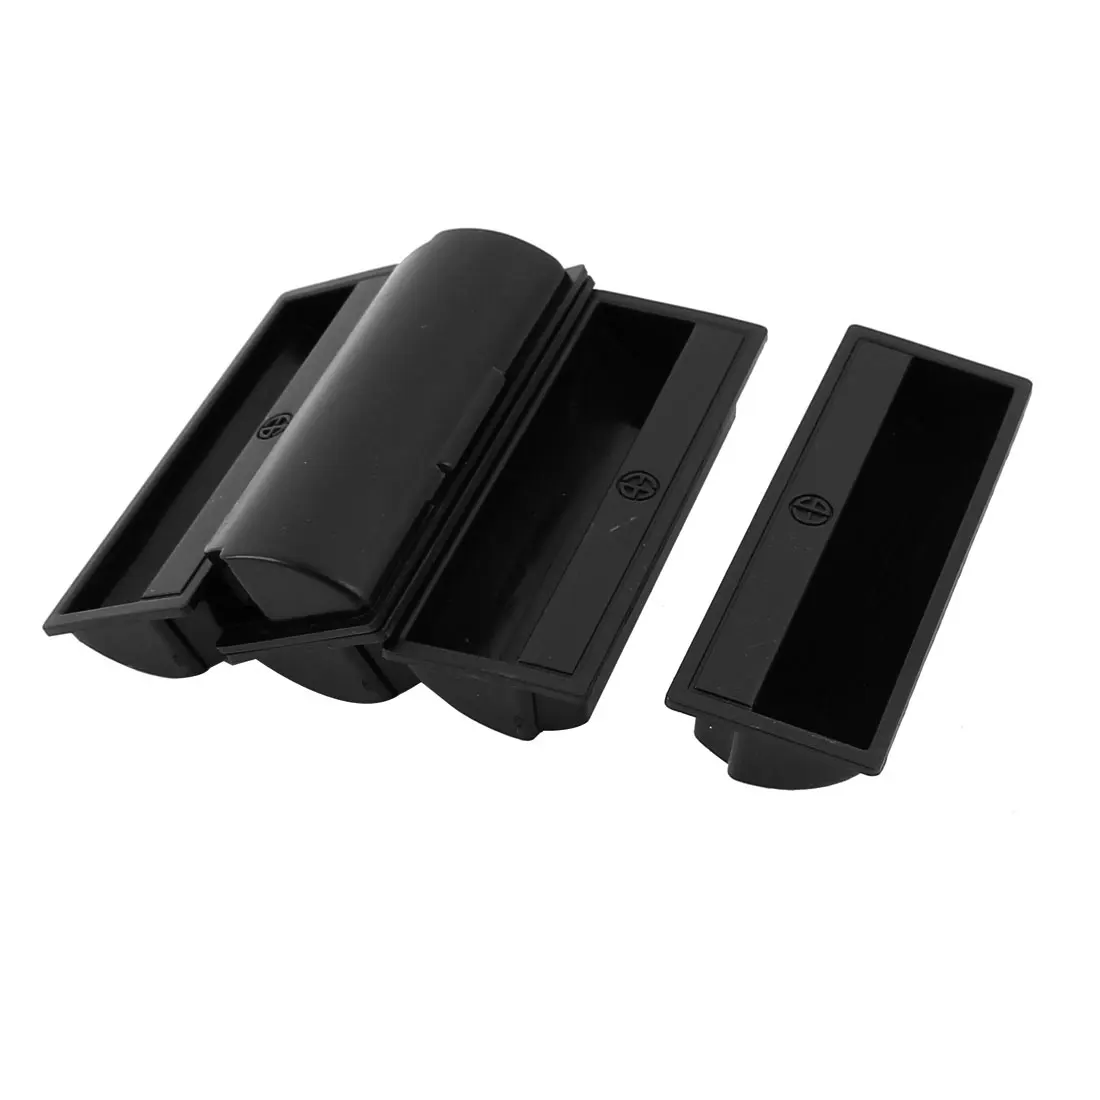 UXCELL 5 шт. черный пластик утопленный флеш Потяните дверь палец Вставить скользящие ручки прямоугольной формы 11x4x2 см для шкафа, ящика